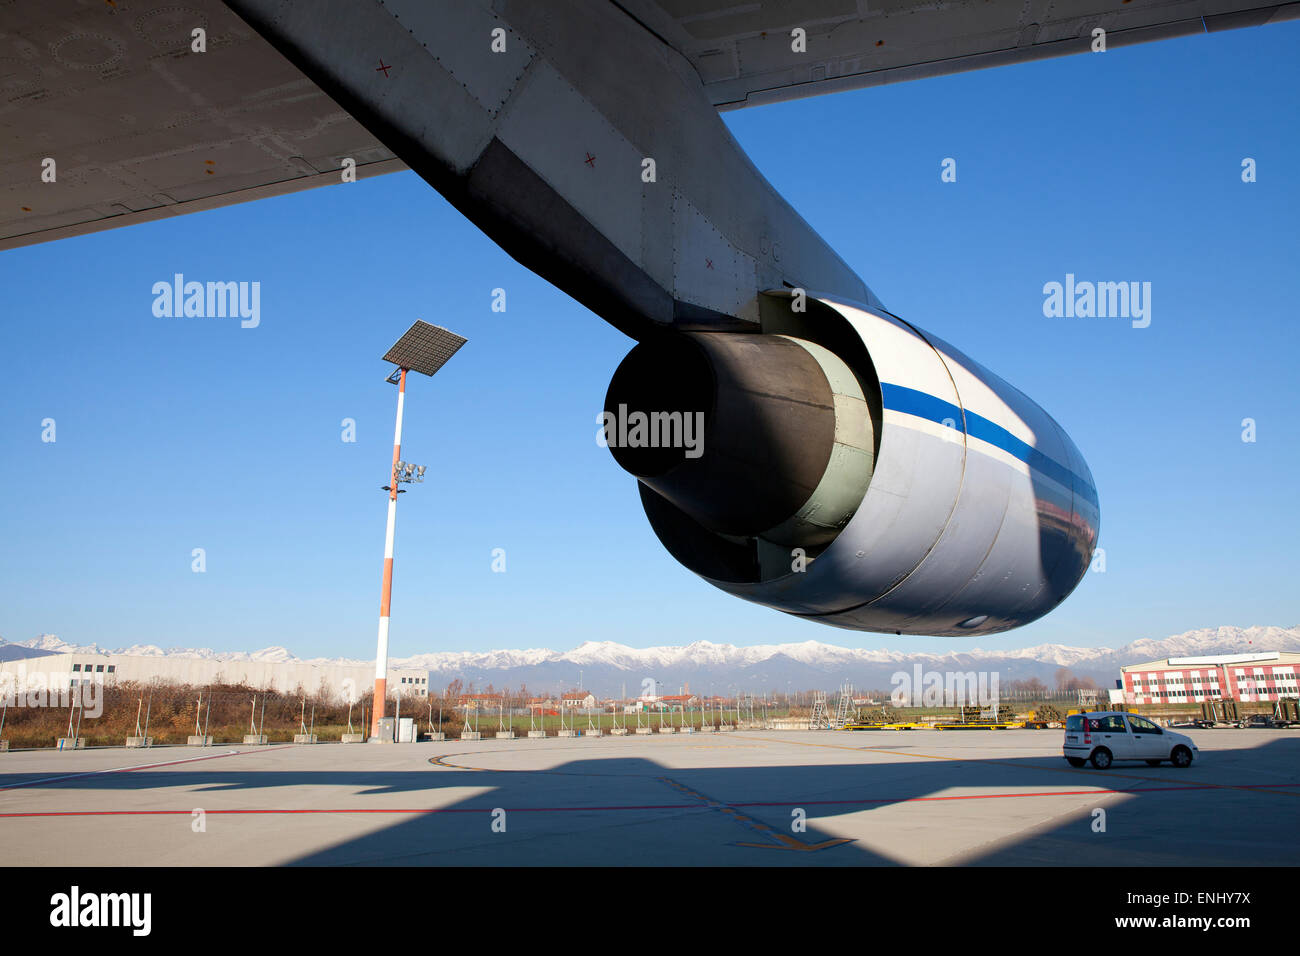 Antonov 225 airplane engine Stock Photo